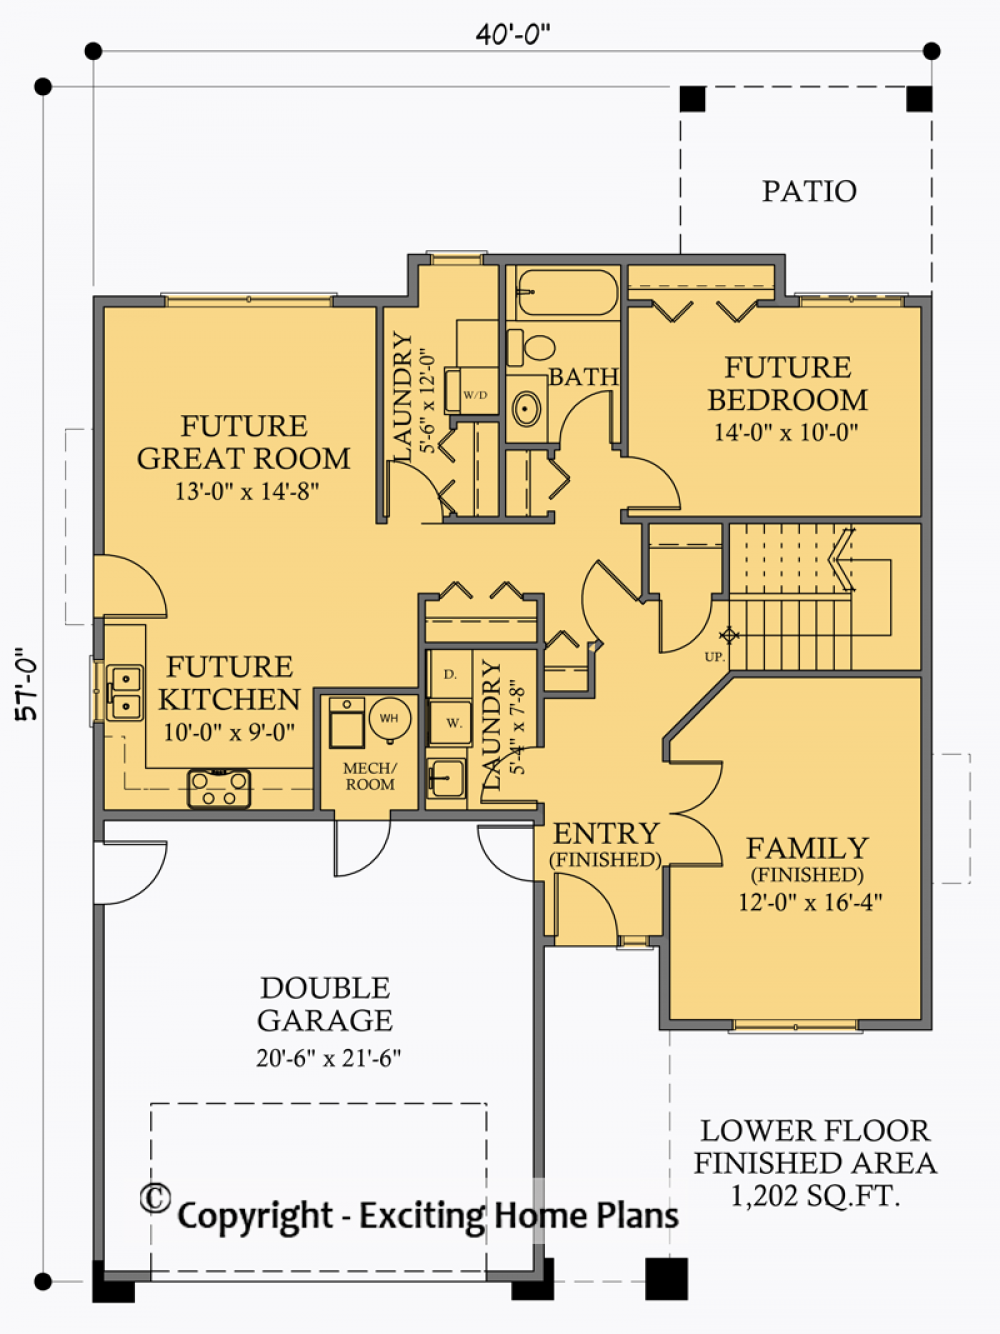 House Plan E1038-10 Lower Floor Plan